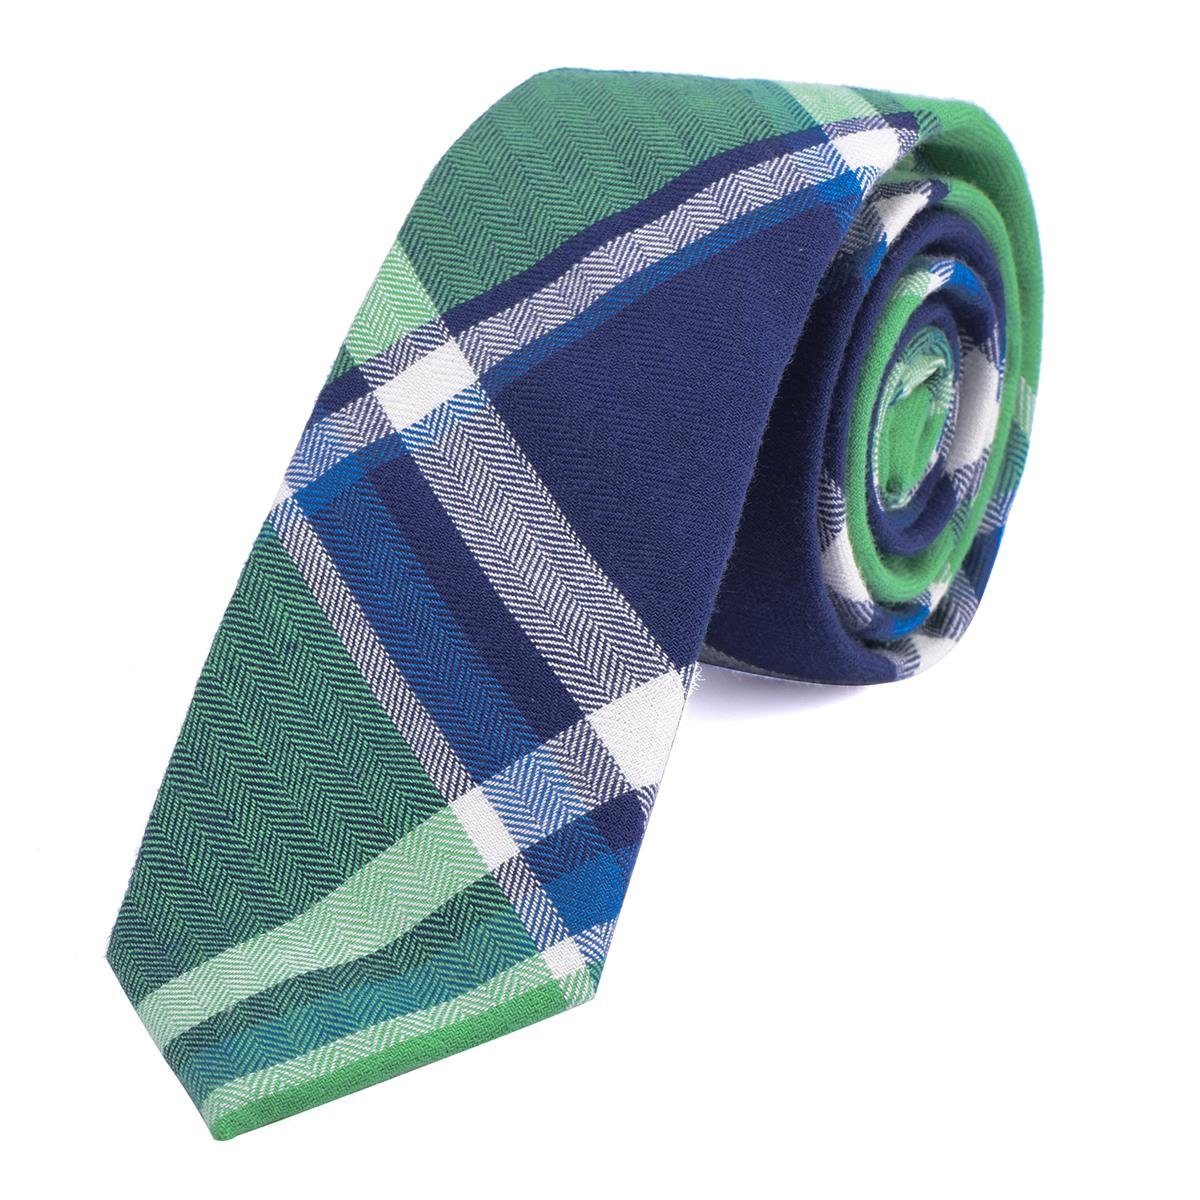 DonDon Krawatte Herren Krawatte 6 cm mit Karos oder Streifen (Packung, 1-St., 1x Krawatte) Baumwolle, kariert oder gestreift, für Büro oder festliche Veranstaltungen grün kariert